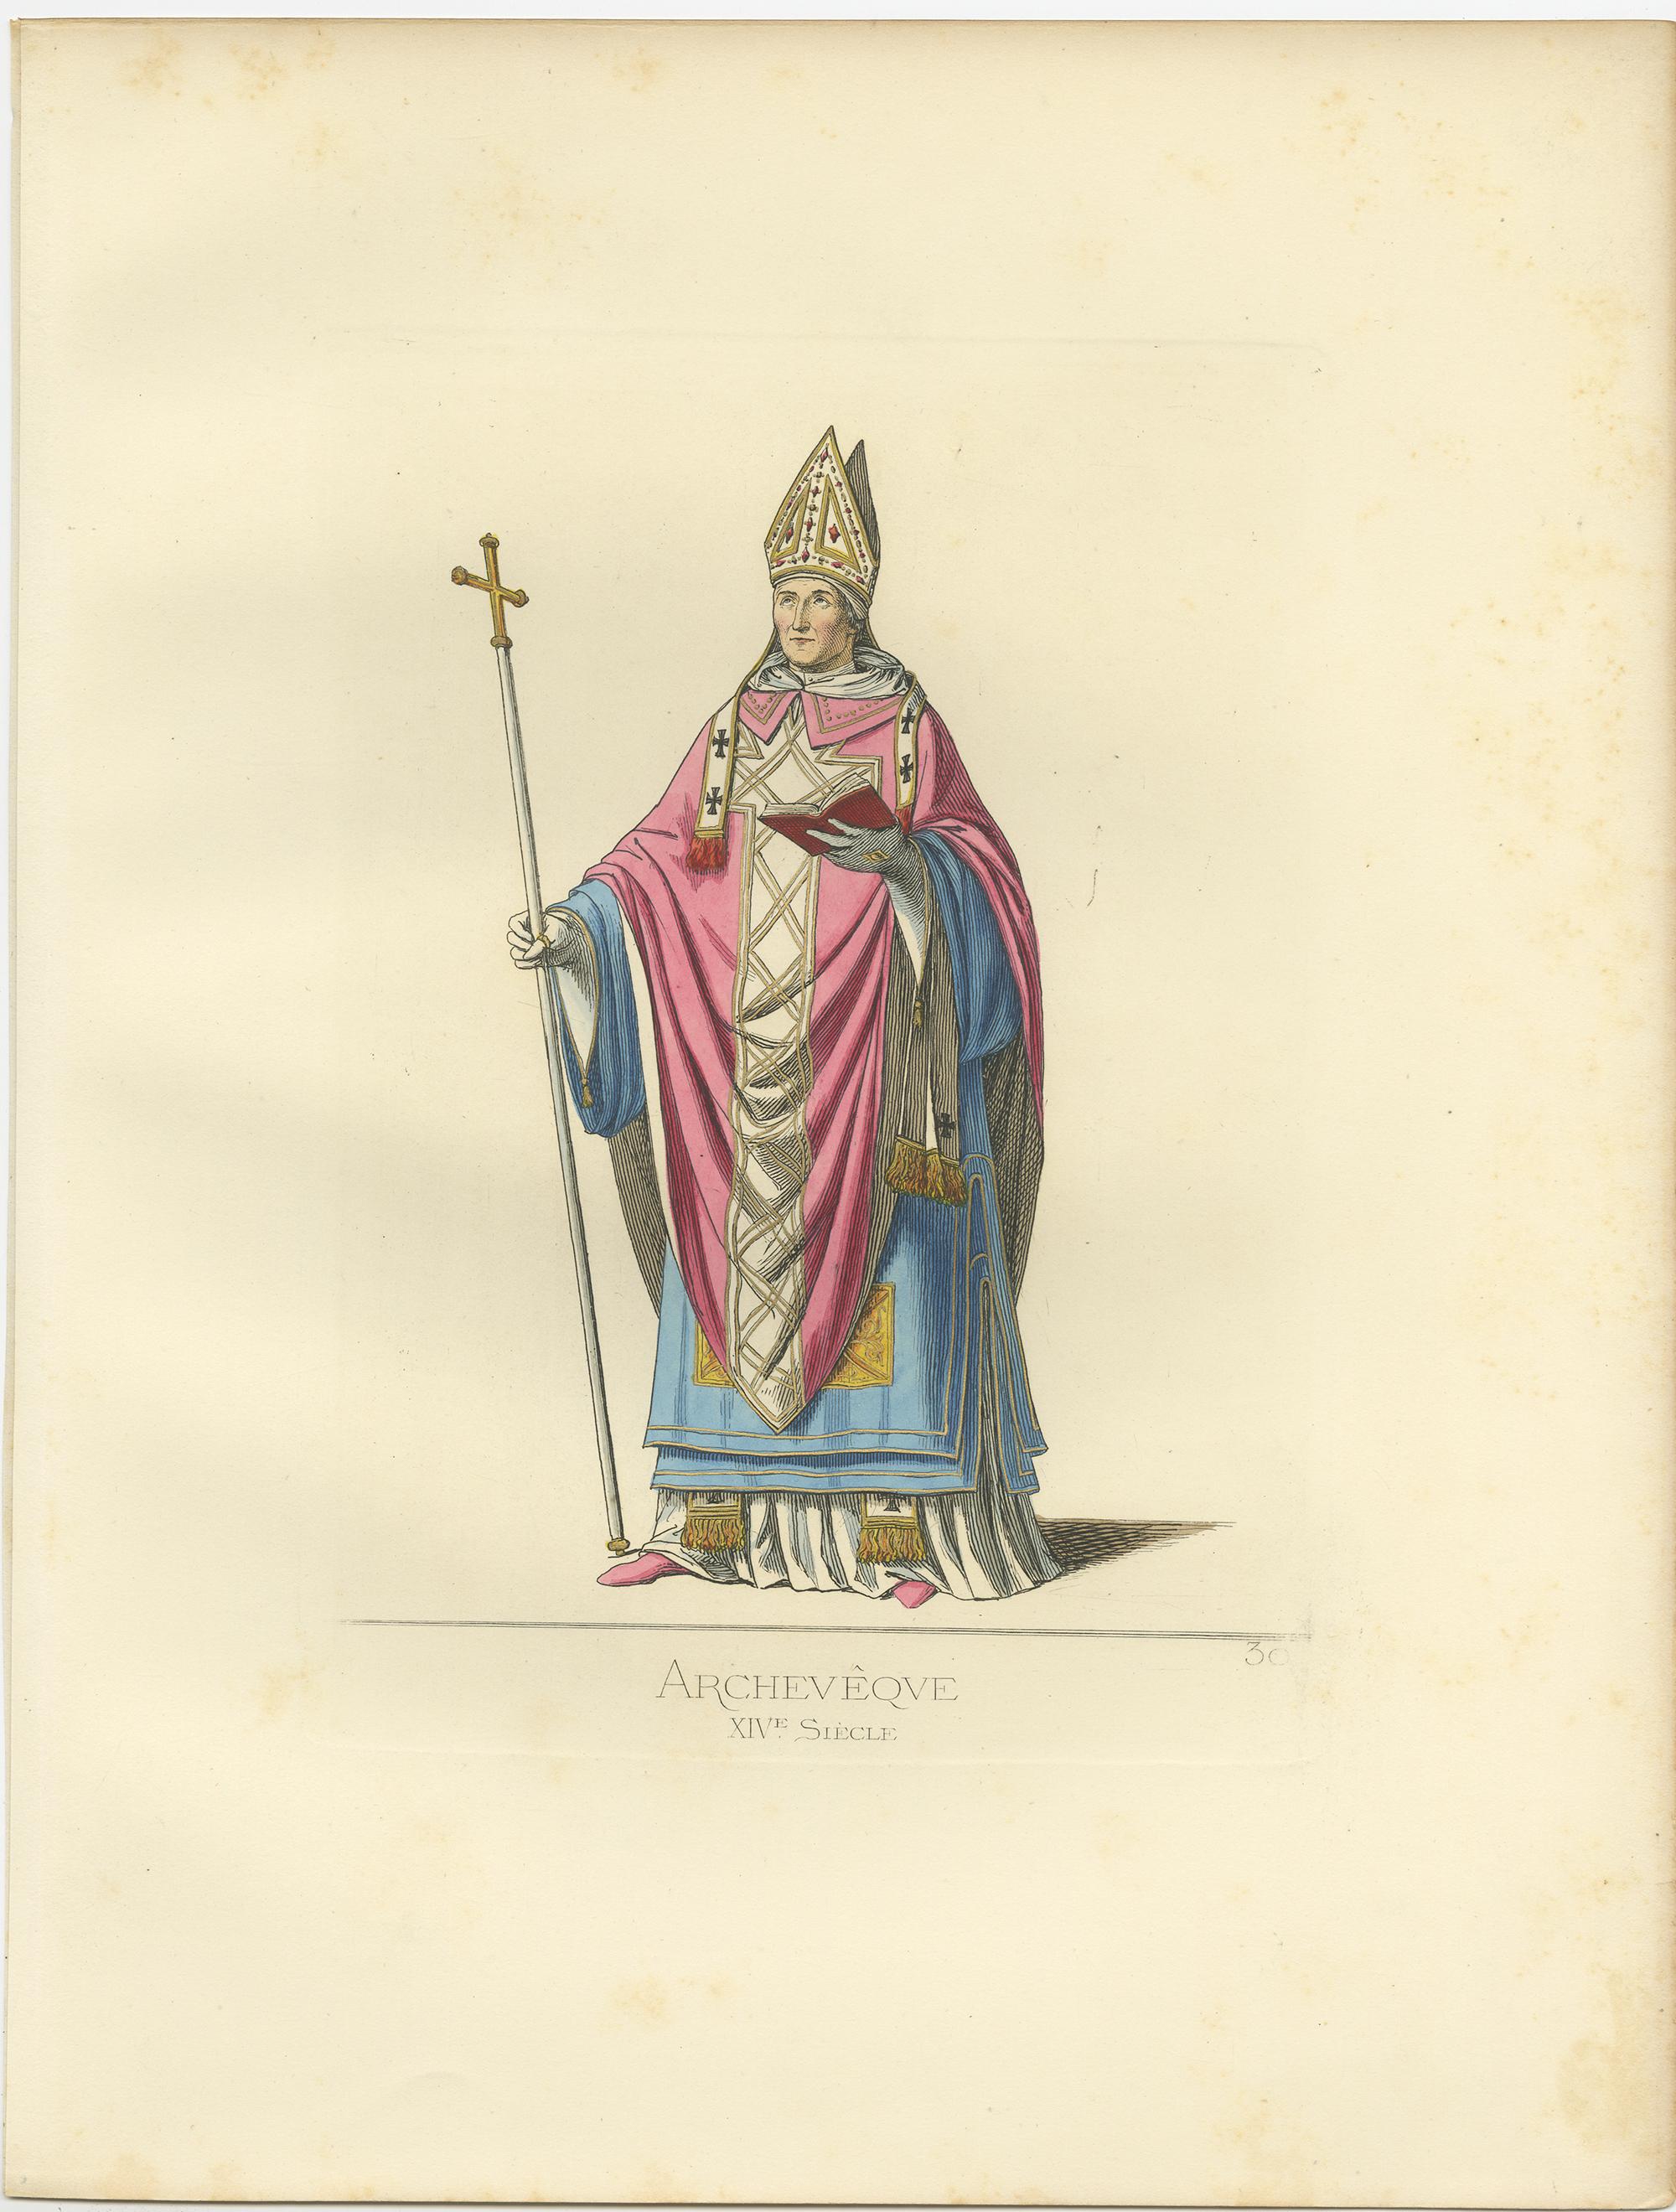 Antique print titled ‘Archeveque, XIVe Siecle.’ Original antique print of an Archbishop. This print originates from 'Costumes historiques de femmes du XIII, XIV et XV siècle' by C. Bonnard. Published 1860.